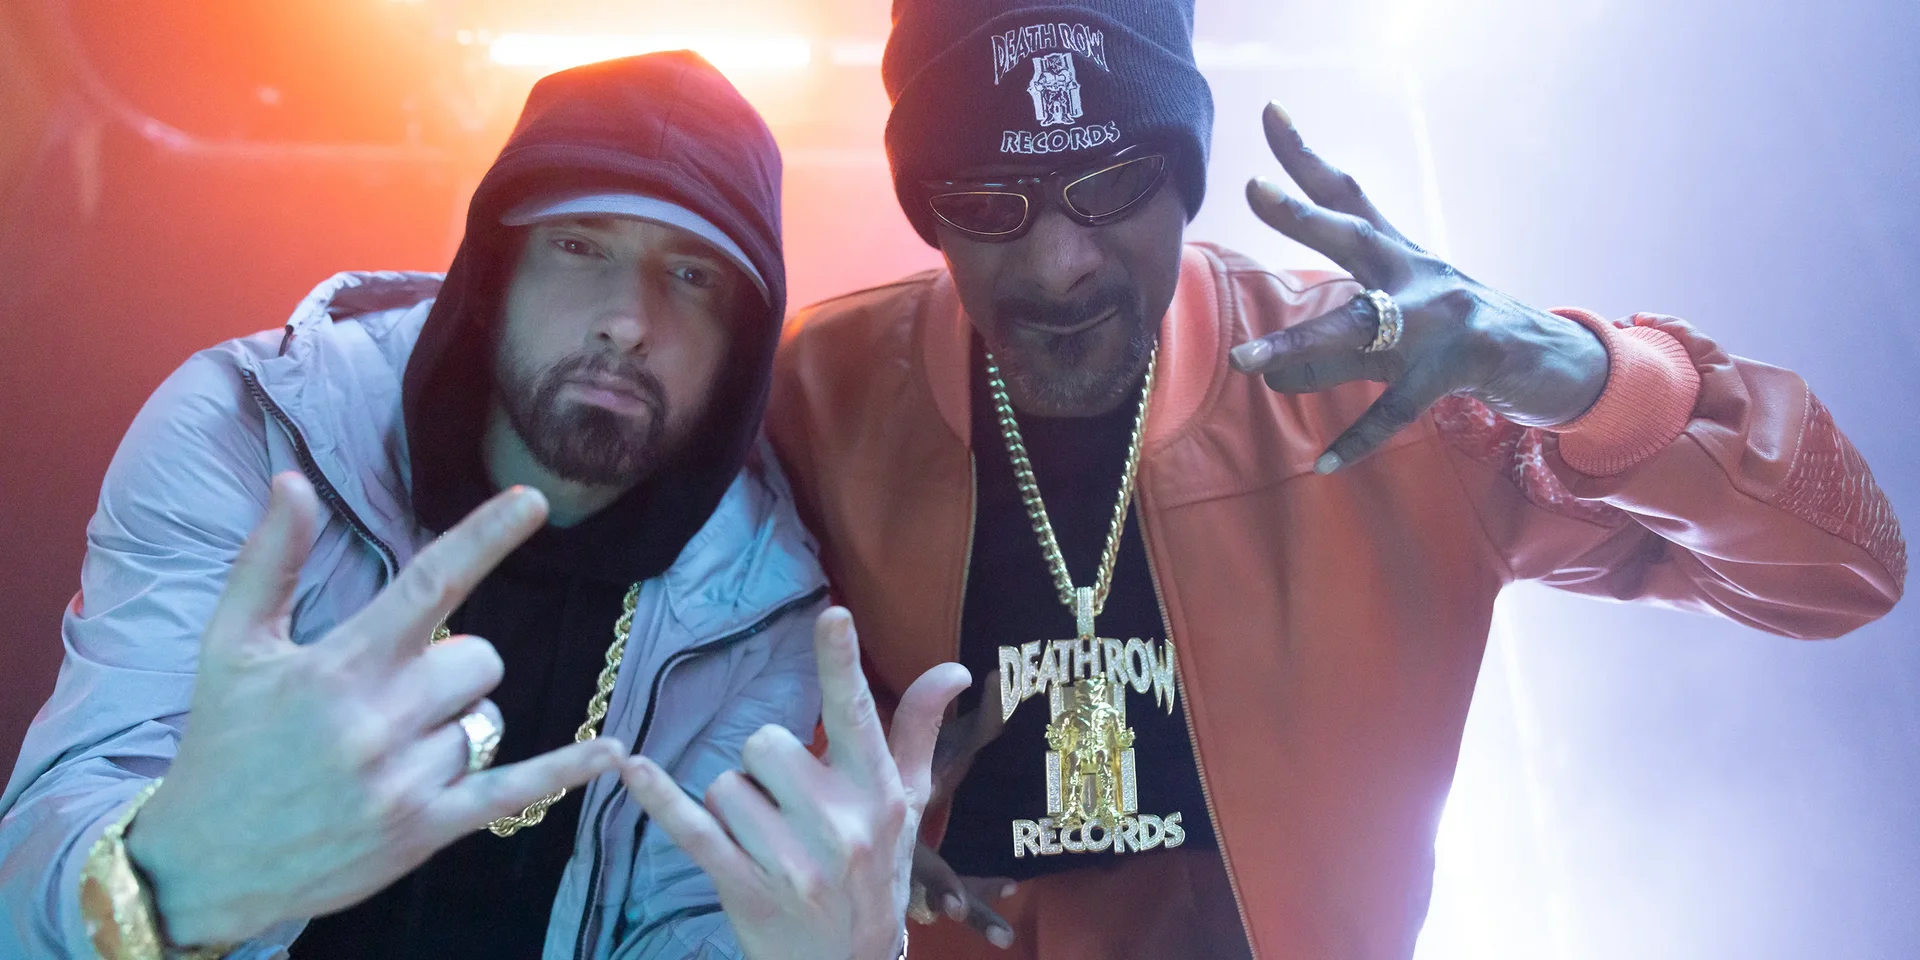 O Eminem και ο Snoop Dogg μοιράζονται πελώριο τσιγαριλίκι στην σκηνή και το κοινό σοκάρεται